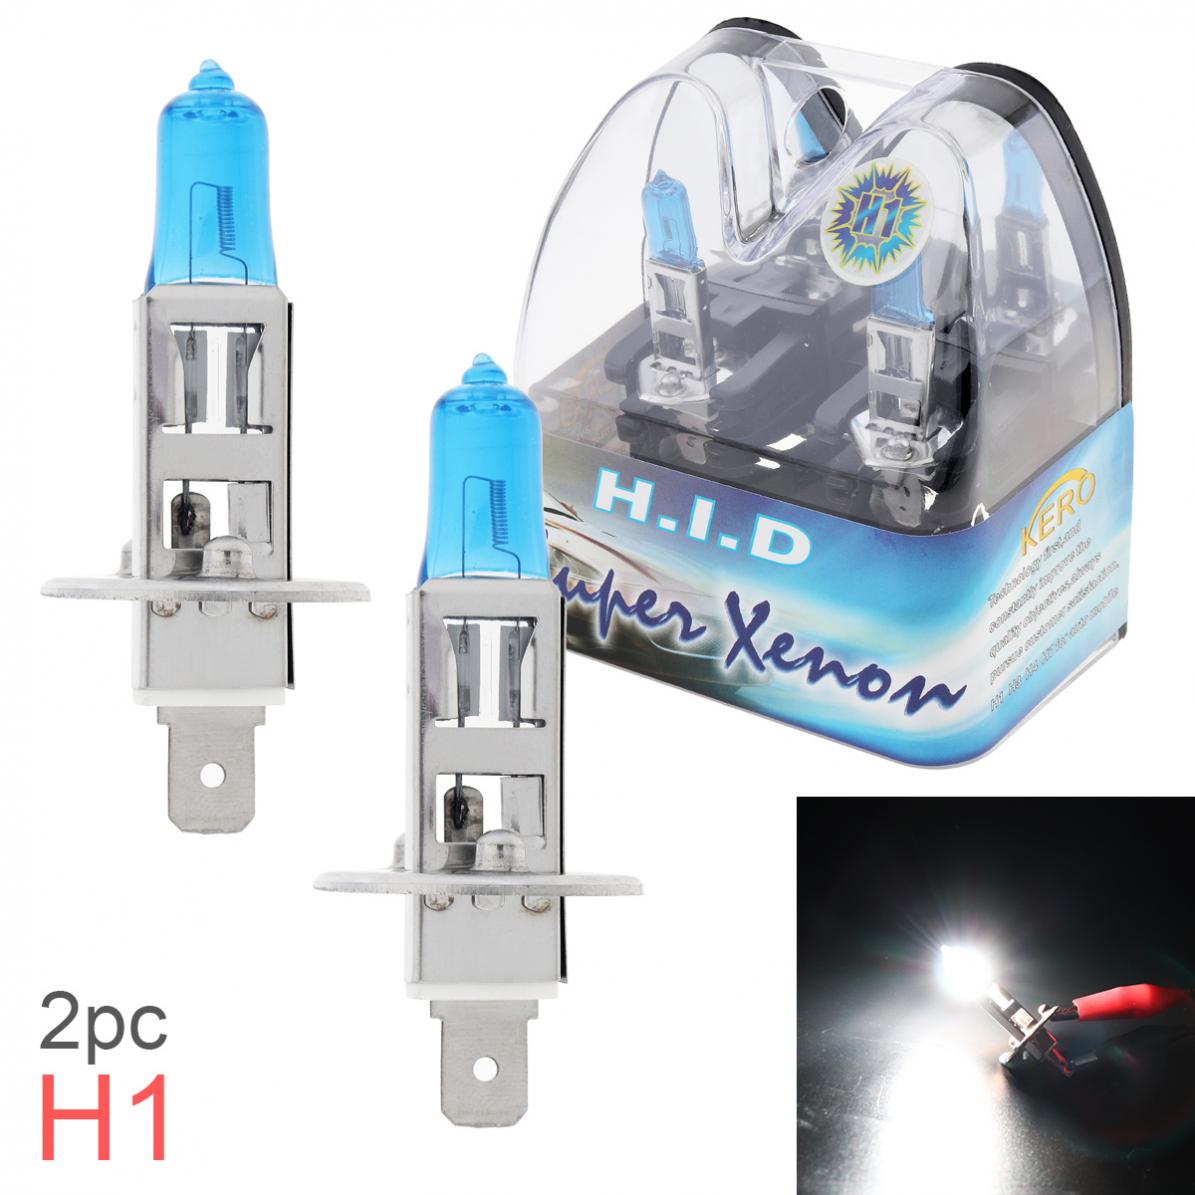 2pcs 12V H1 55W 6000K White Light Universal Super Bright Car Xenon Halogen Lamp Auto Front Headlight Fog Bulb